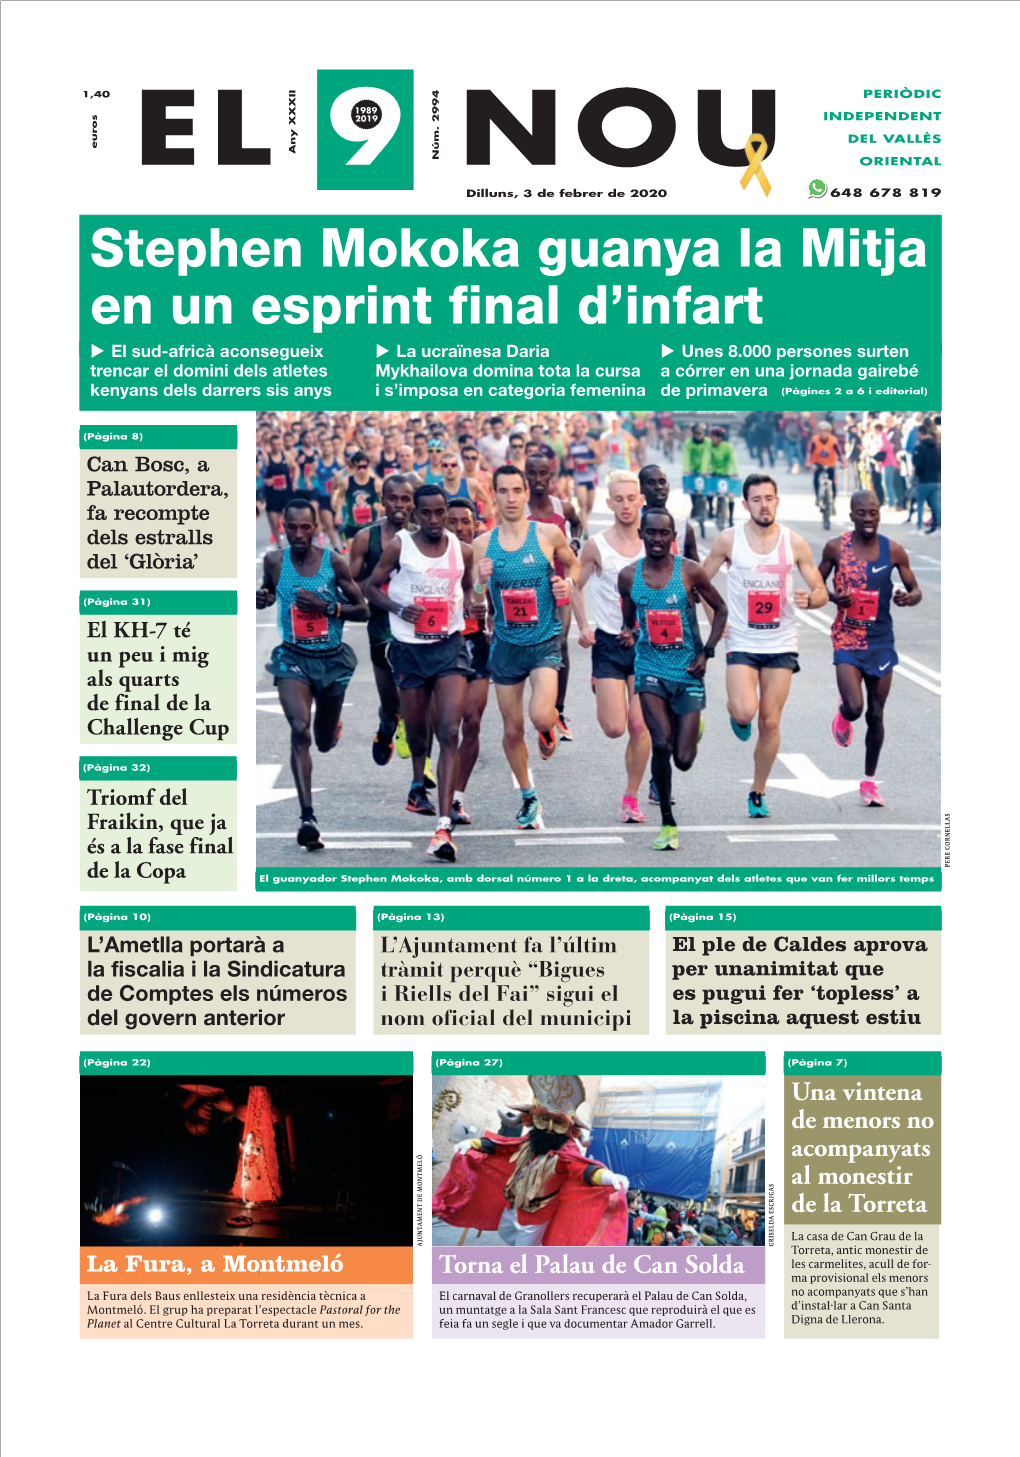 Stephen Mokoka Guanya La Mitja En Un Esprint Final D'infart